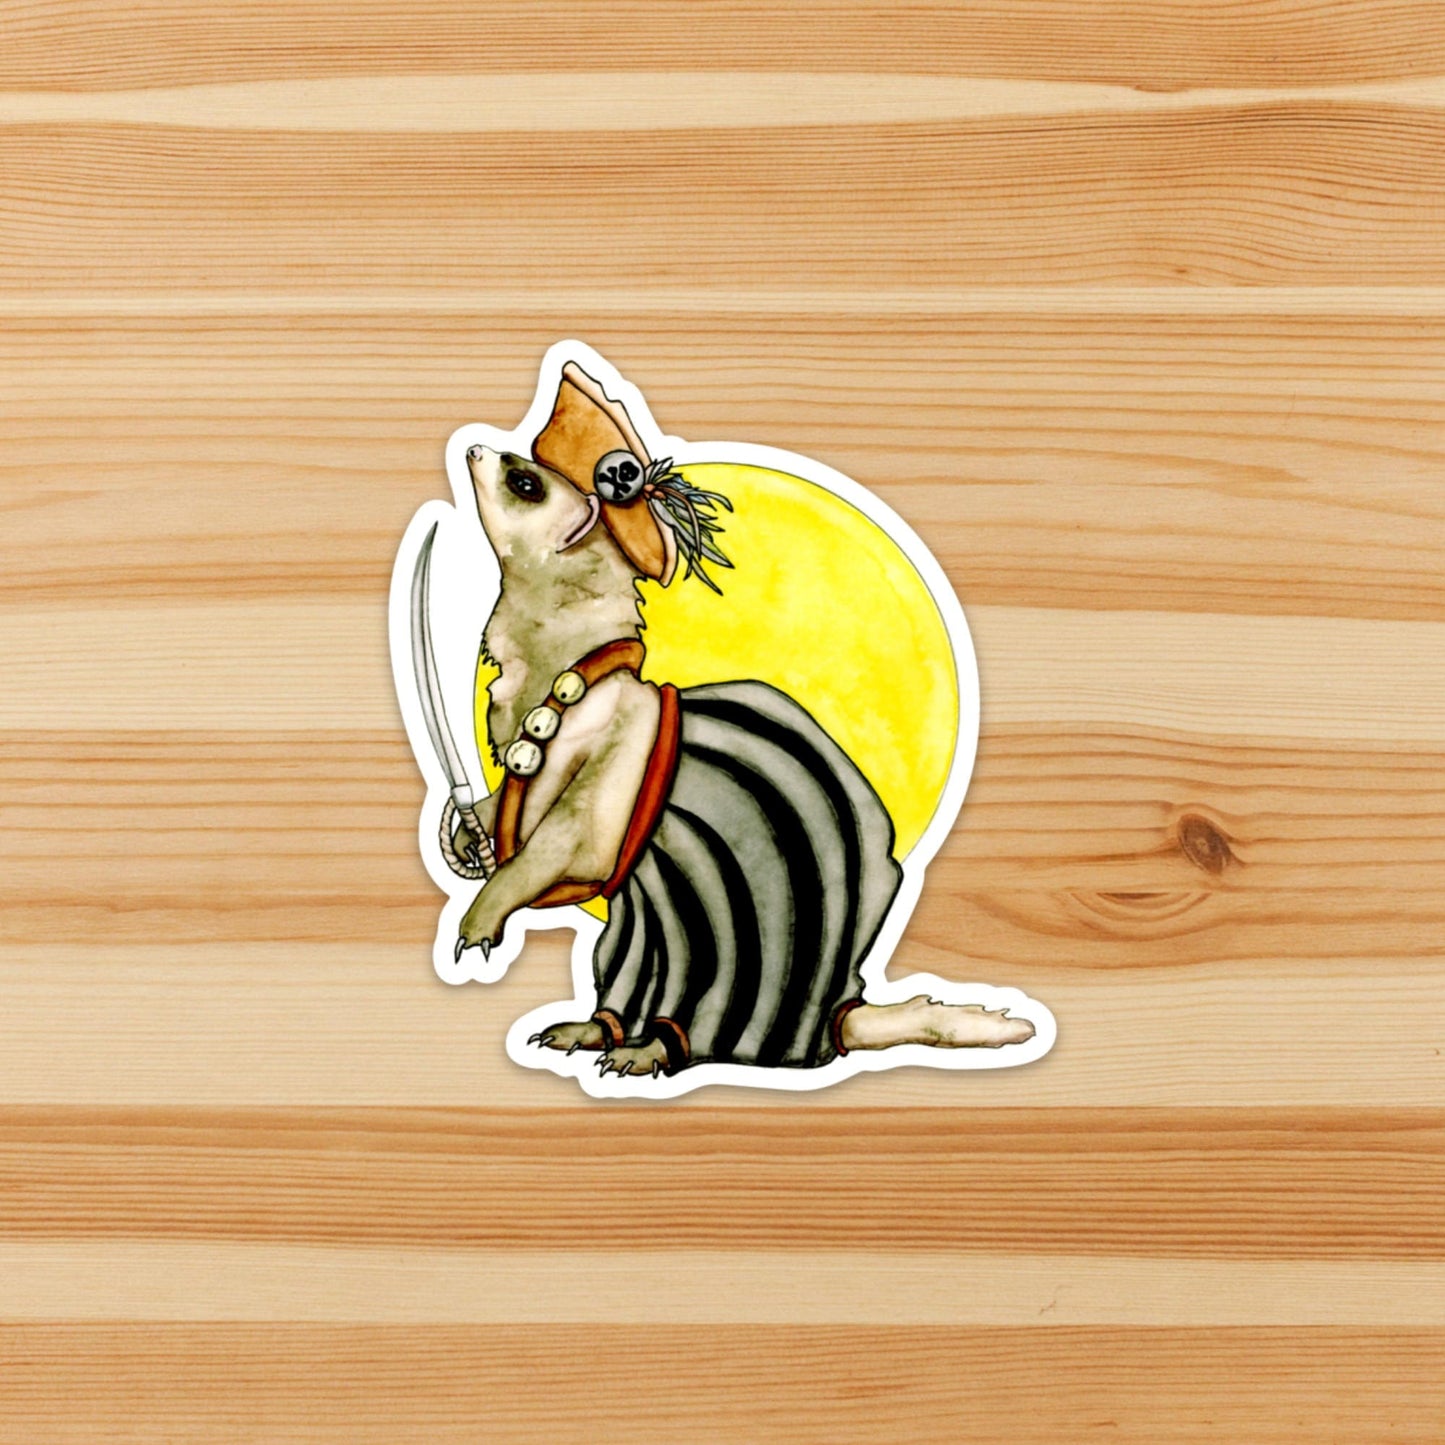 PinkPolish Design Stickers "First Mate Ferret" Vinyl Die Cut Sticker